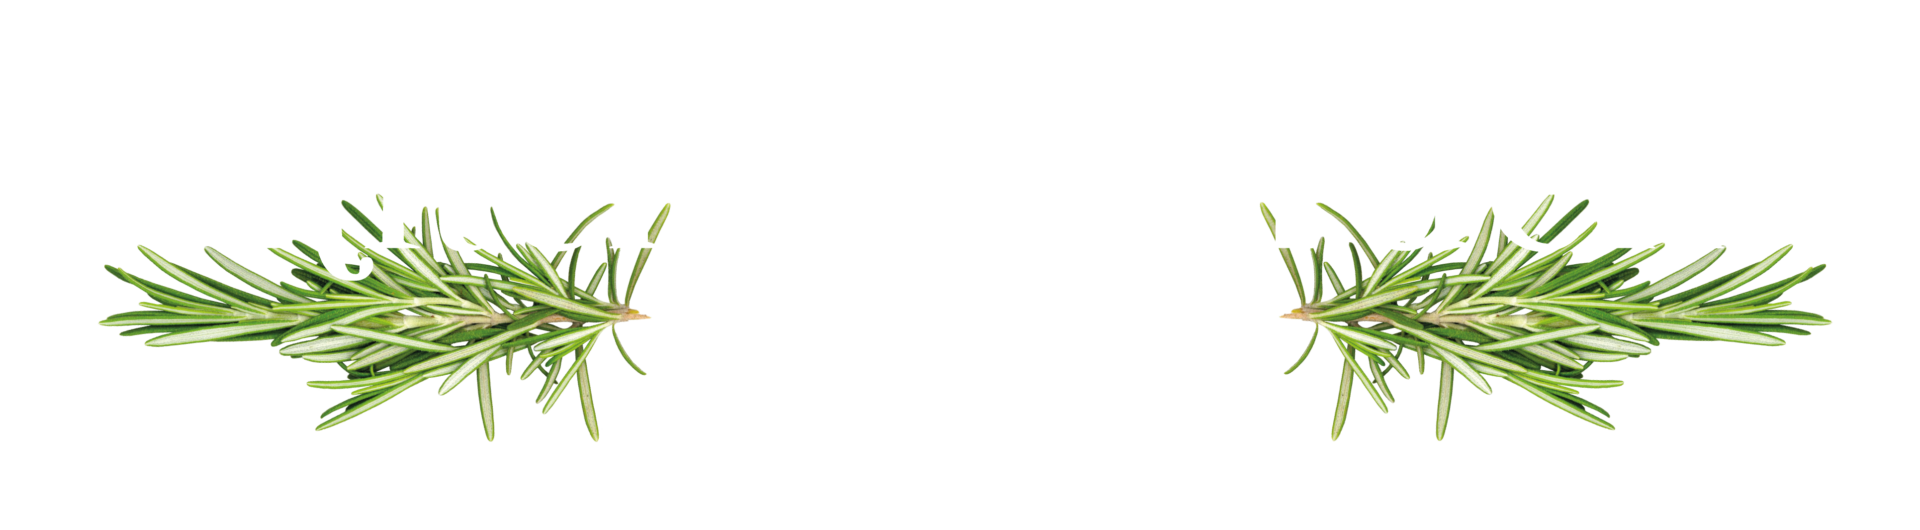 Kitchen Garden Plant Centre